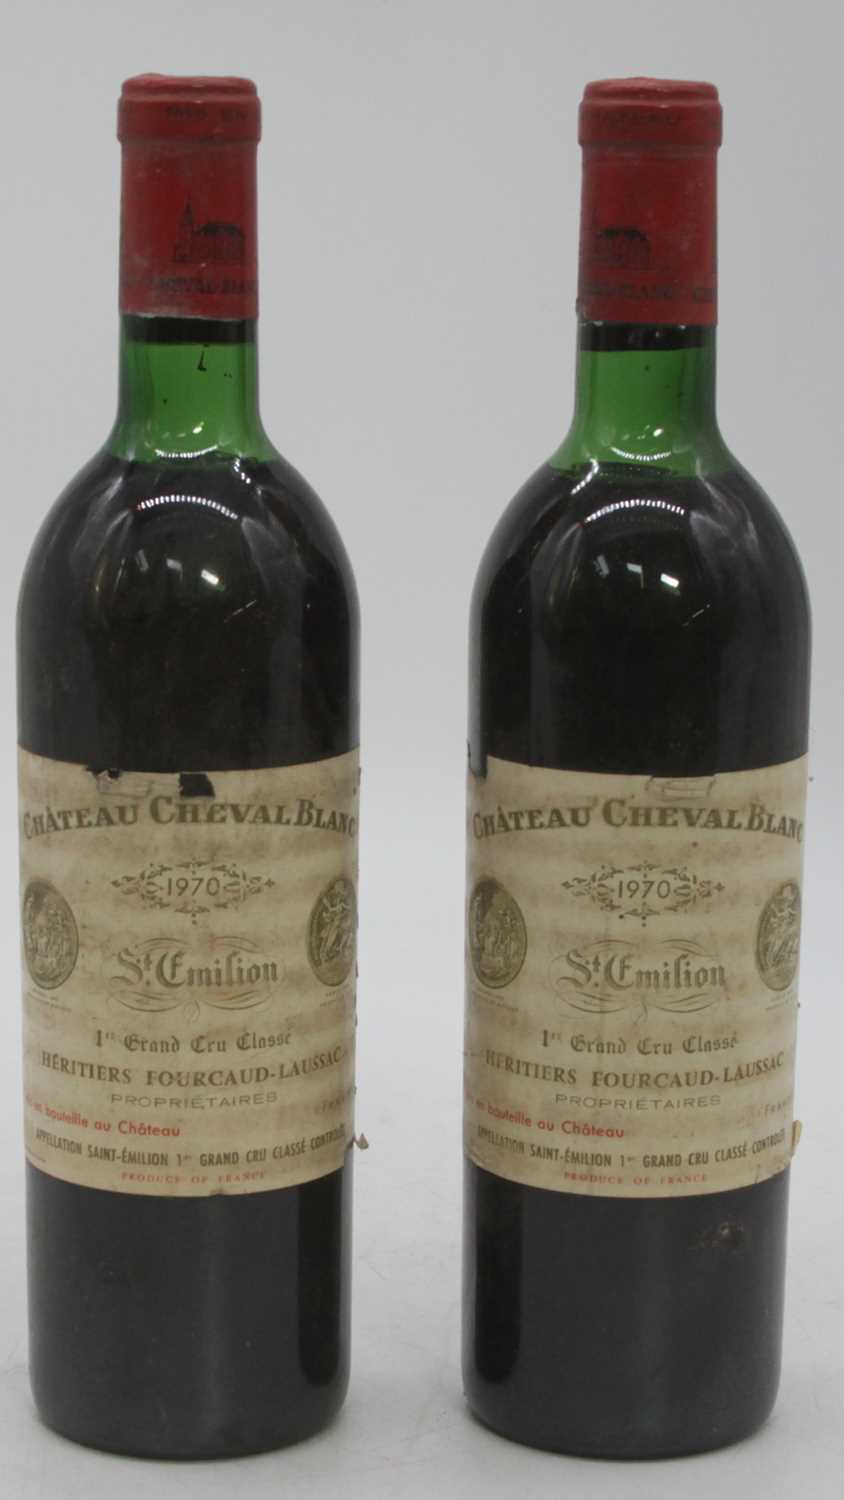 Château Cheval Blanc, 1970, Saint-Emilion, two bottles